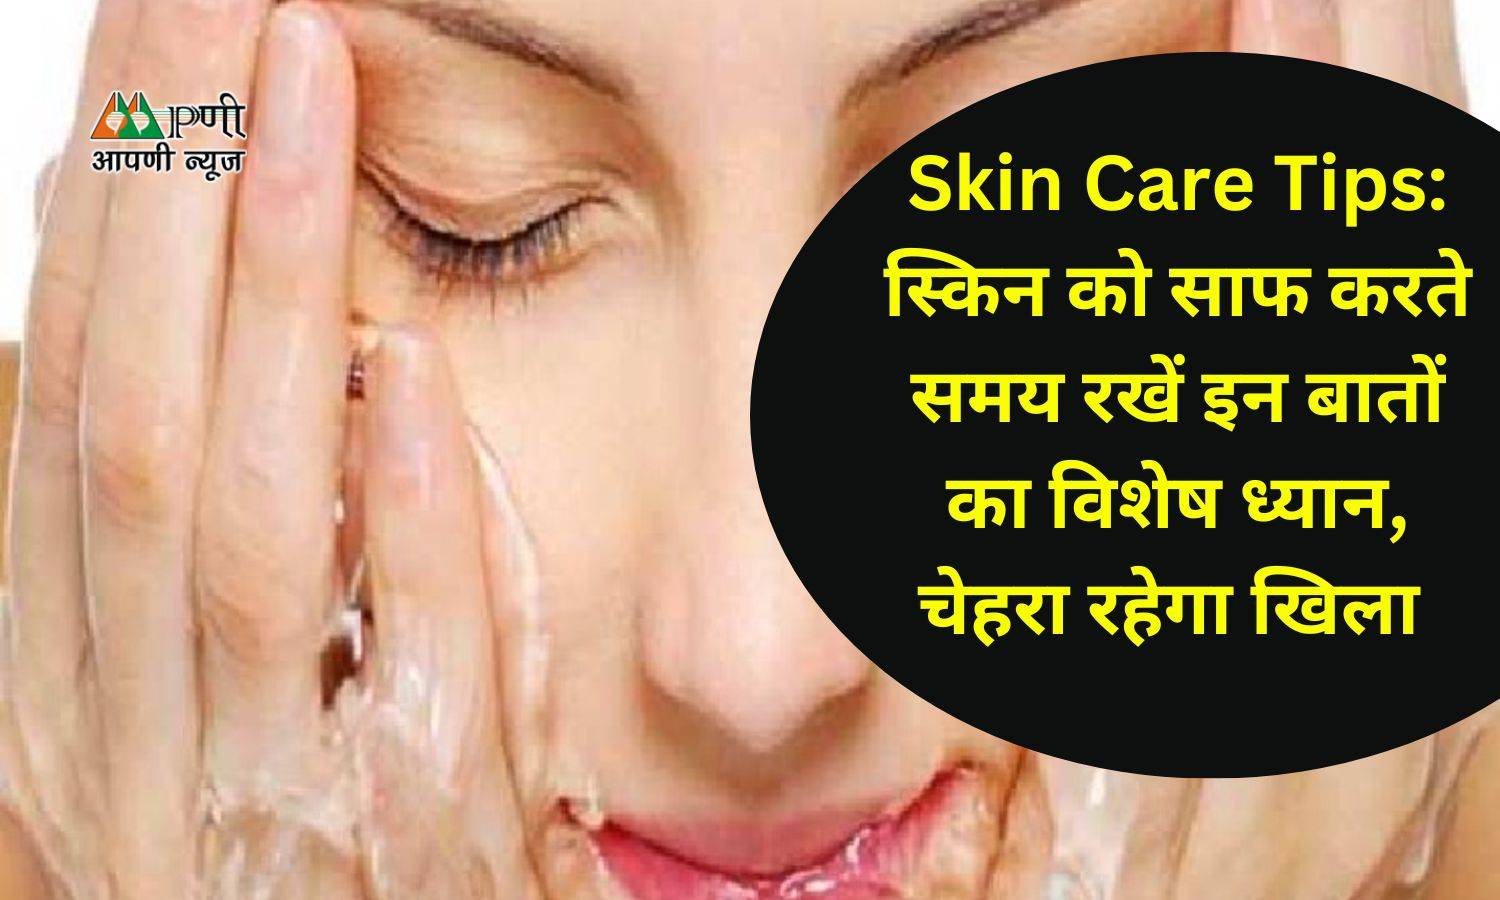 Skin Care Tips: स्किन को साफ करते समय रखें इन बातों का विशेष ध्यान, चेहरा रहेगा खिला